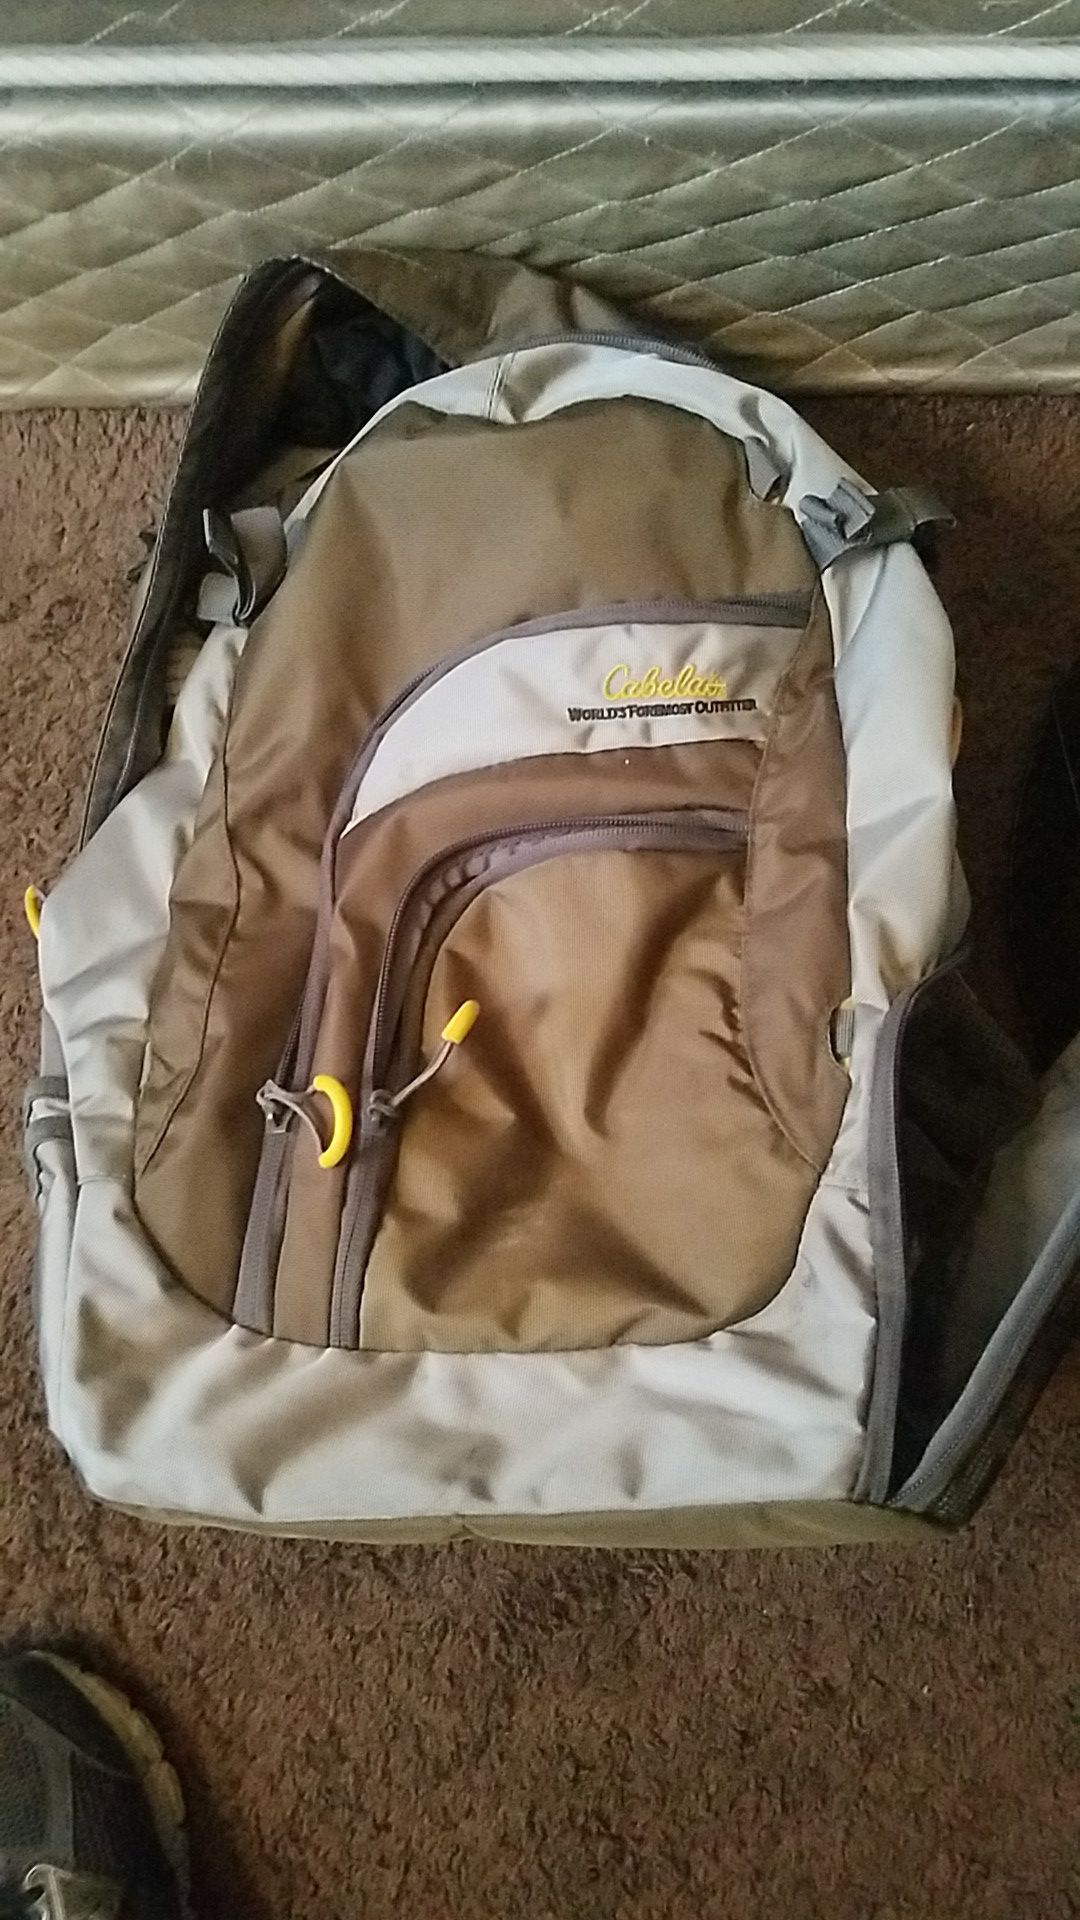 O.B.O. Fully stocked Cabelas fishing backpack